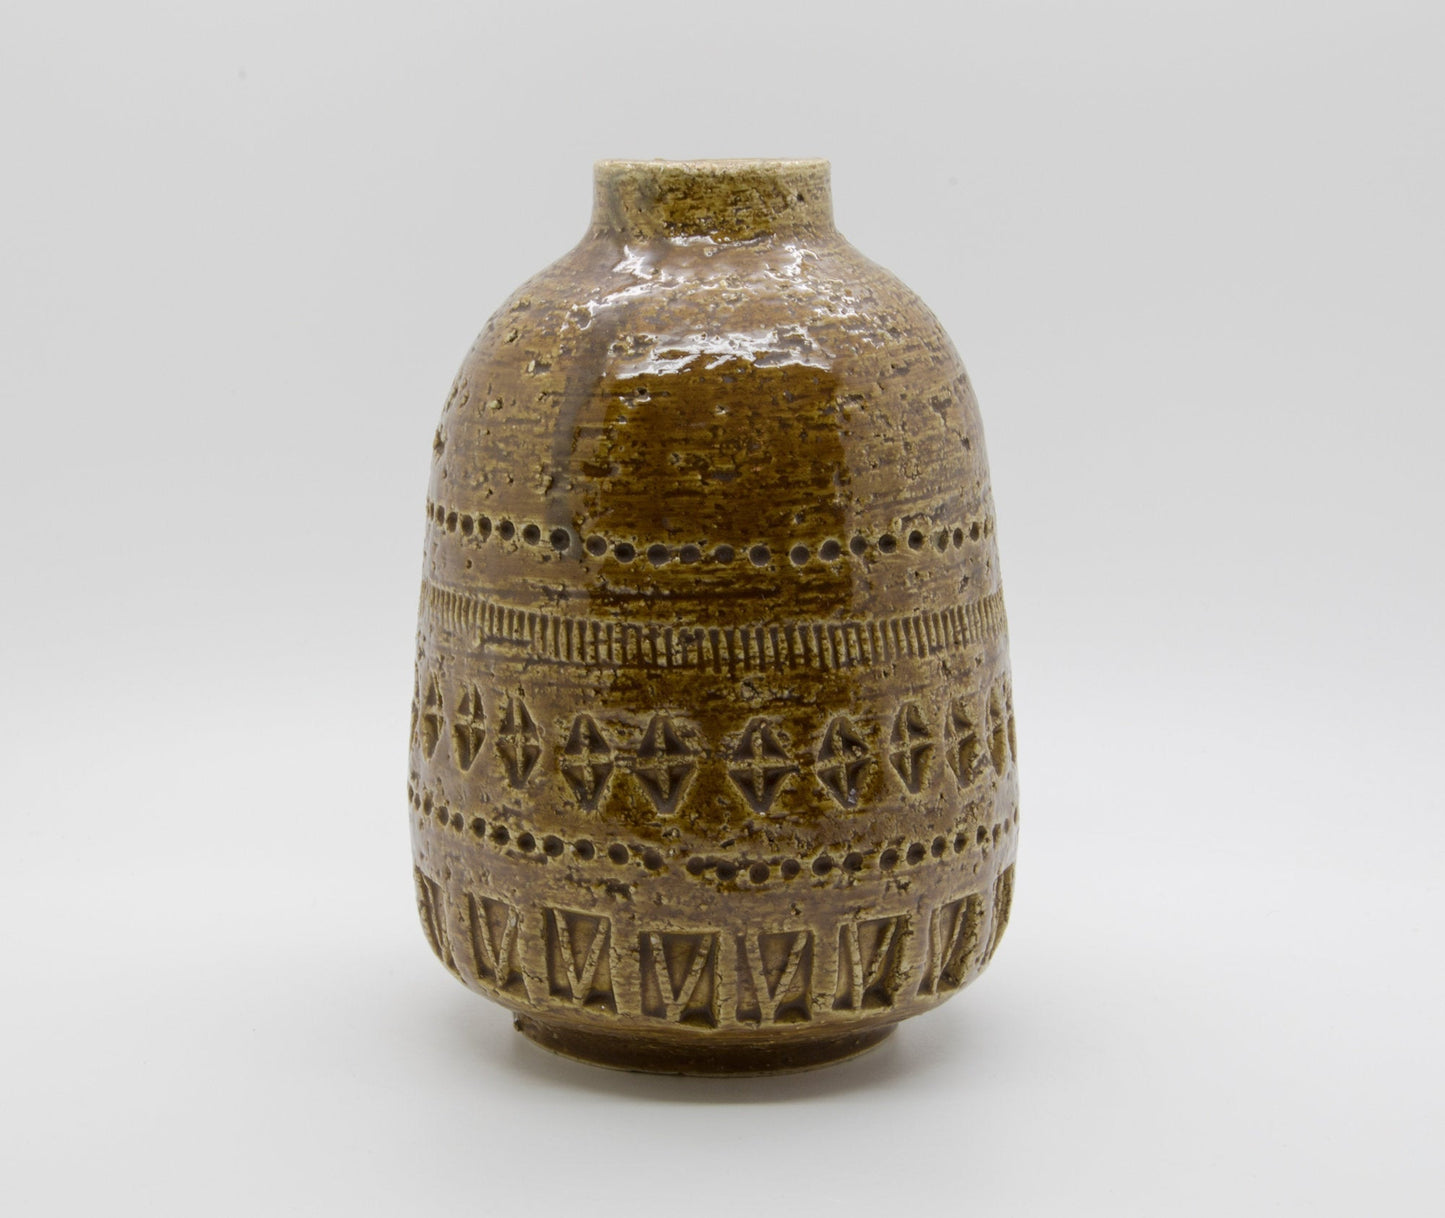 Bitossi ALDO LONDI Yellow Brown Ceramic Vase Mollaris.com 